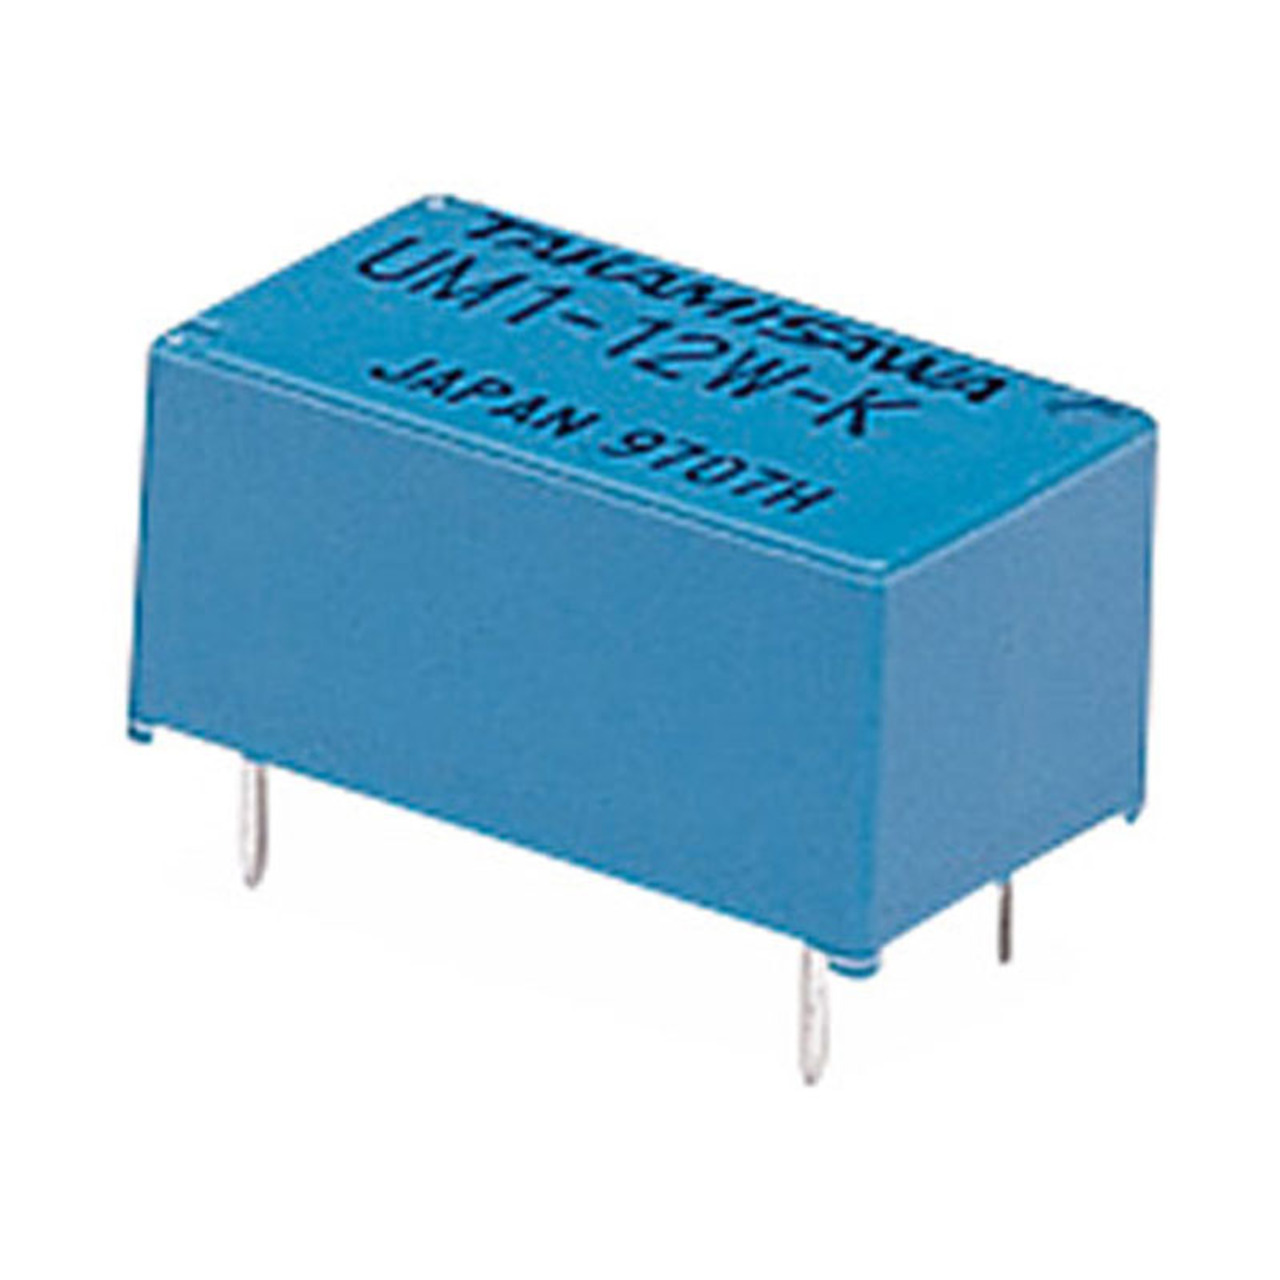 Miniatur-Relais- 12 V-720-Ohm-Spule- -br-1 x ein- 1 x aus- UM1-12 W-K unter Komponenten